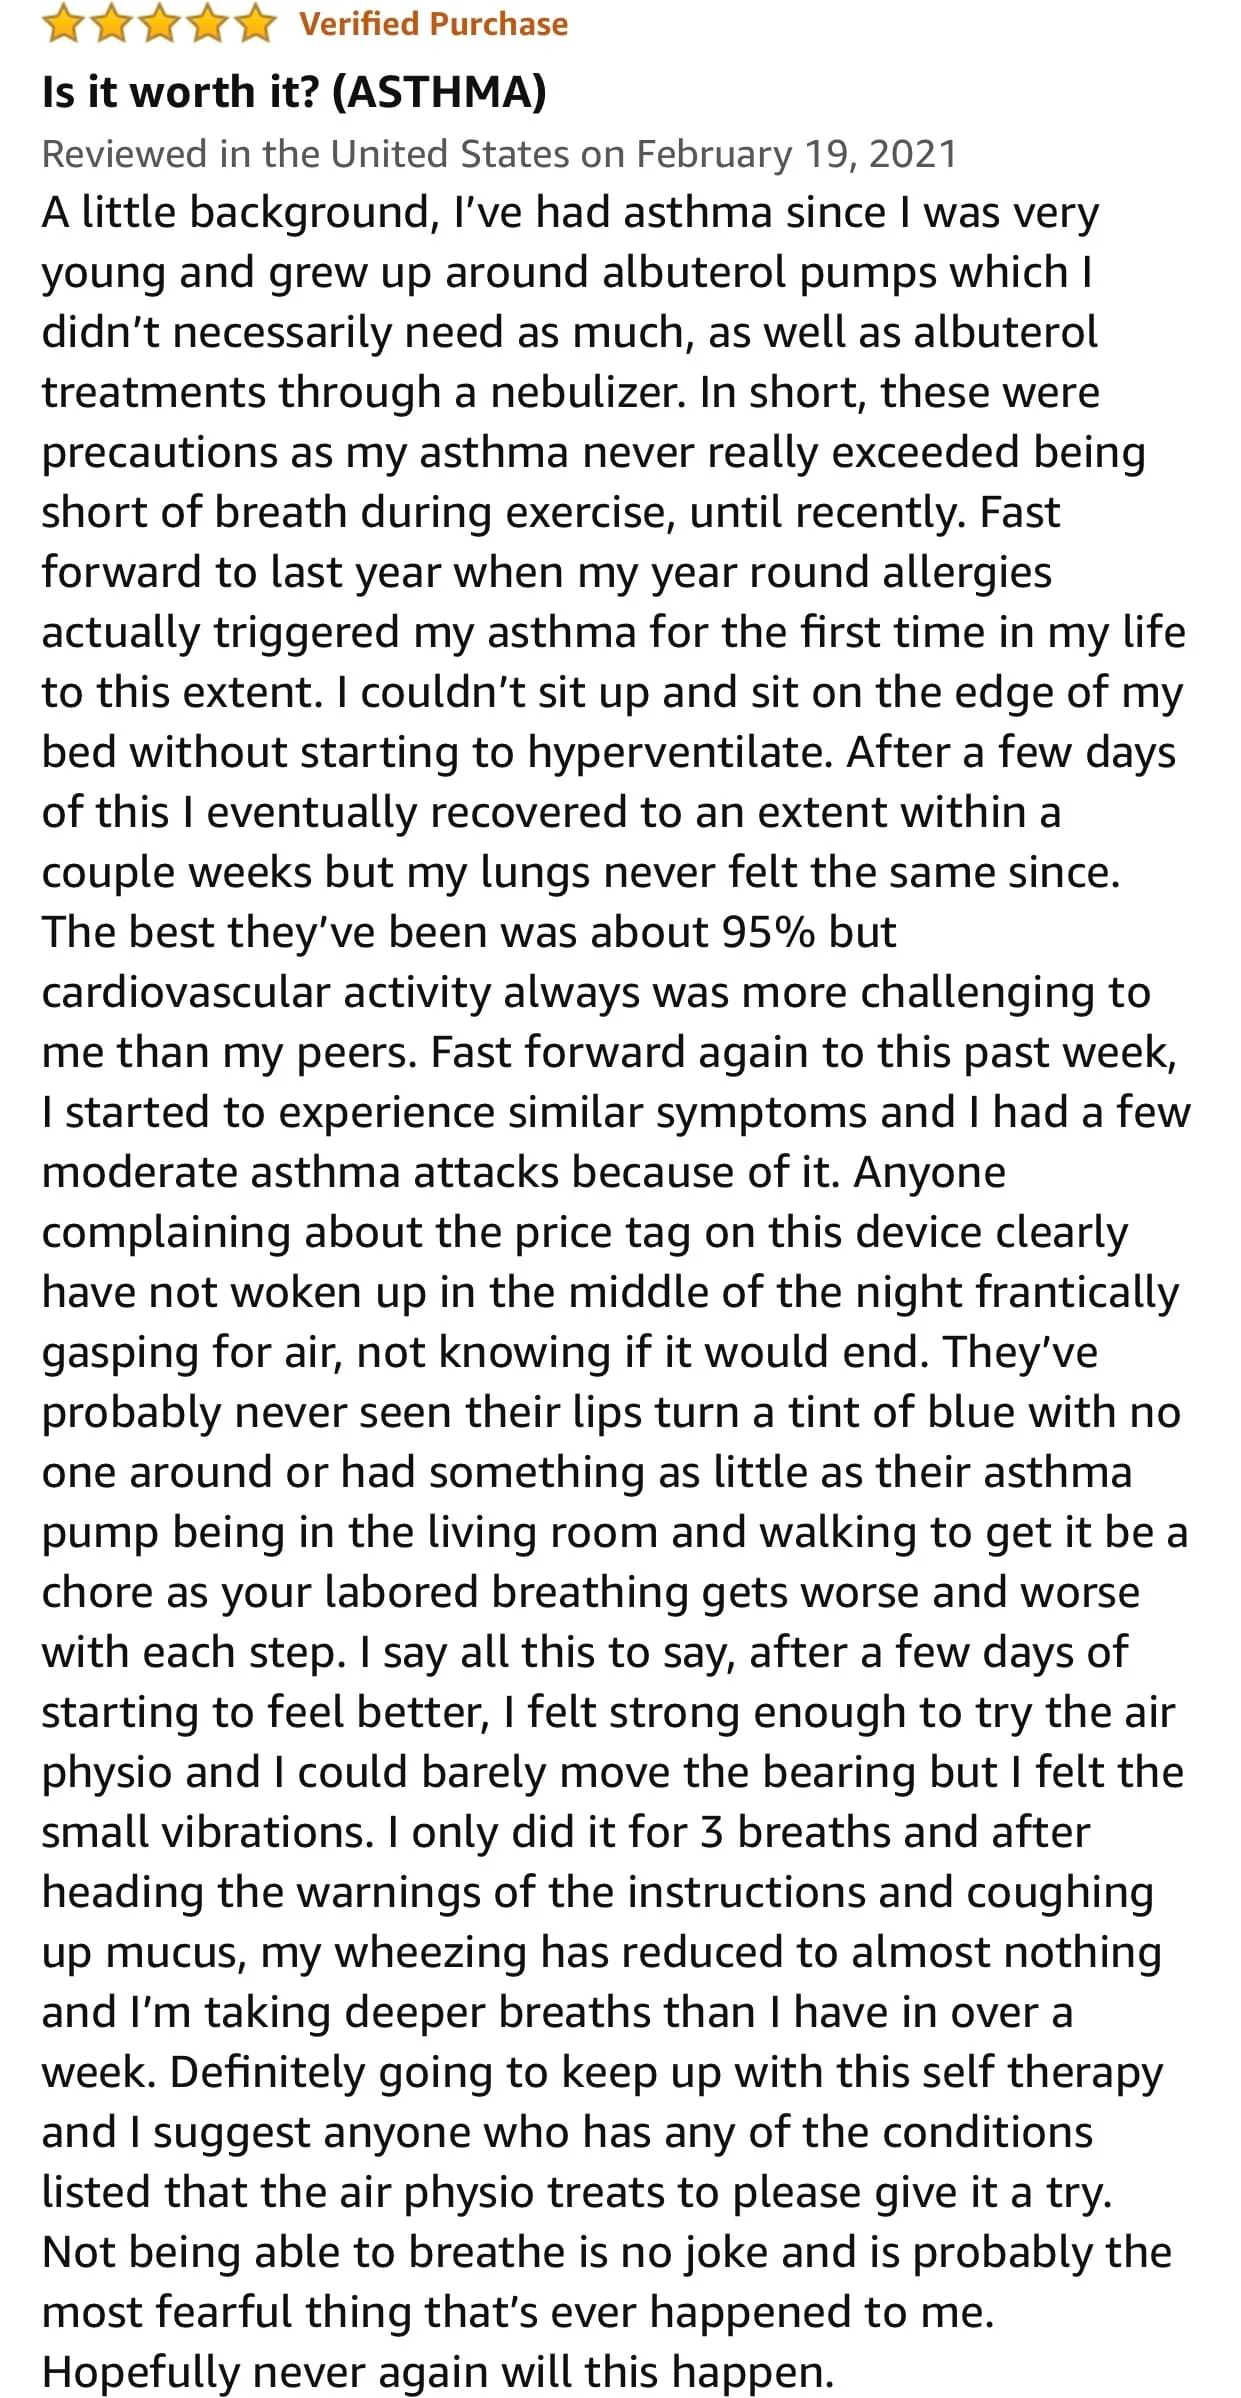 is-it-worth-it?(Asthma)